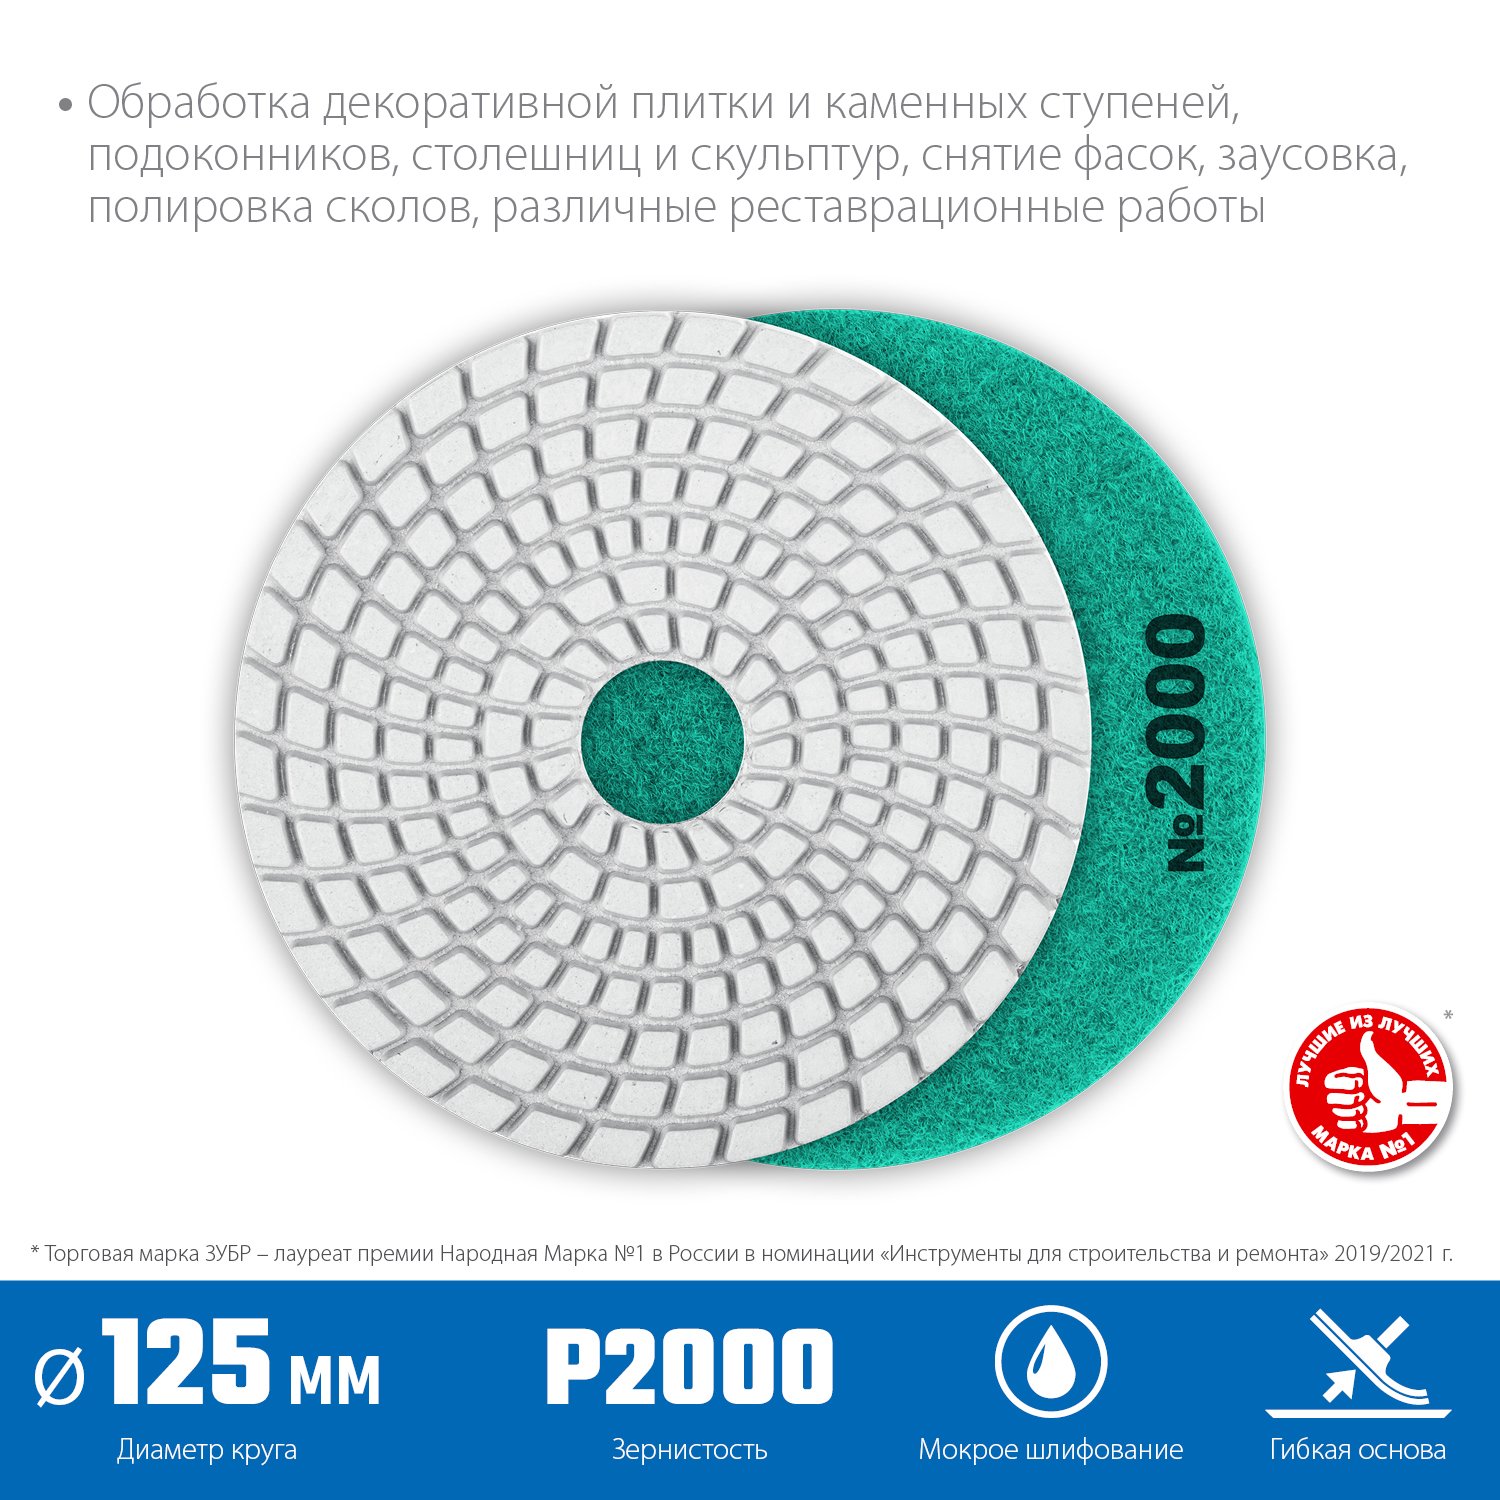 ЗУБР 125мм N2000 алмазный гибкий шлифовальный круг (Черепашка) для мокрого шлифования (29867-2000)